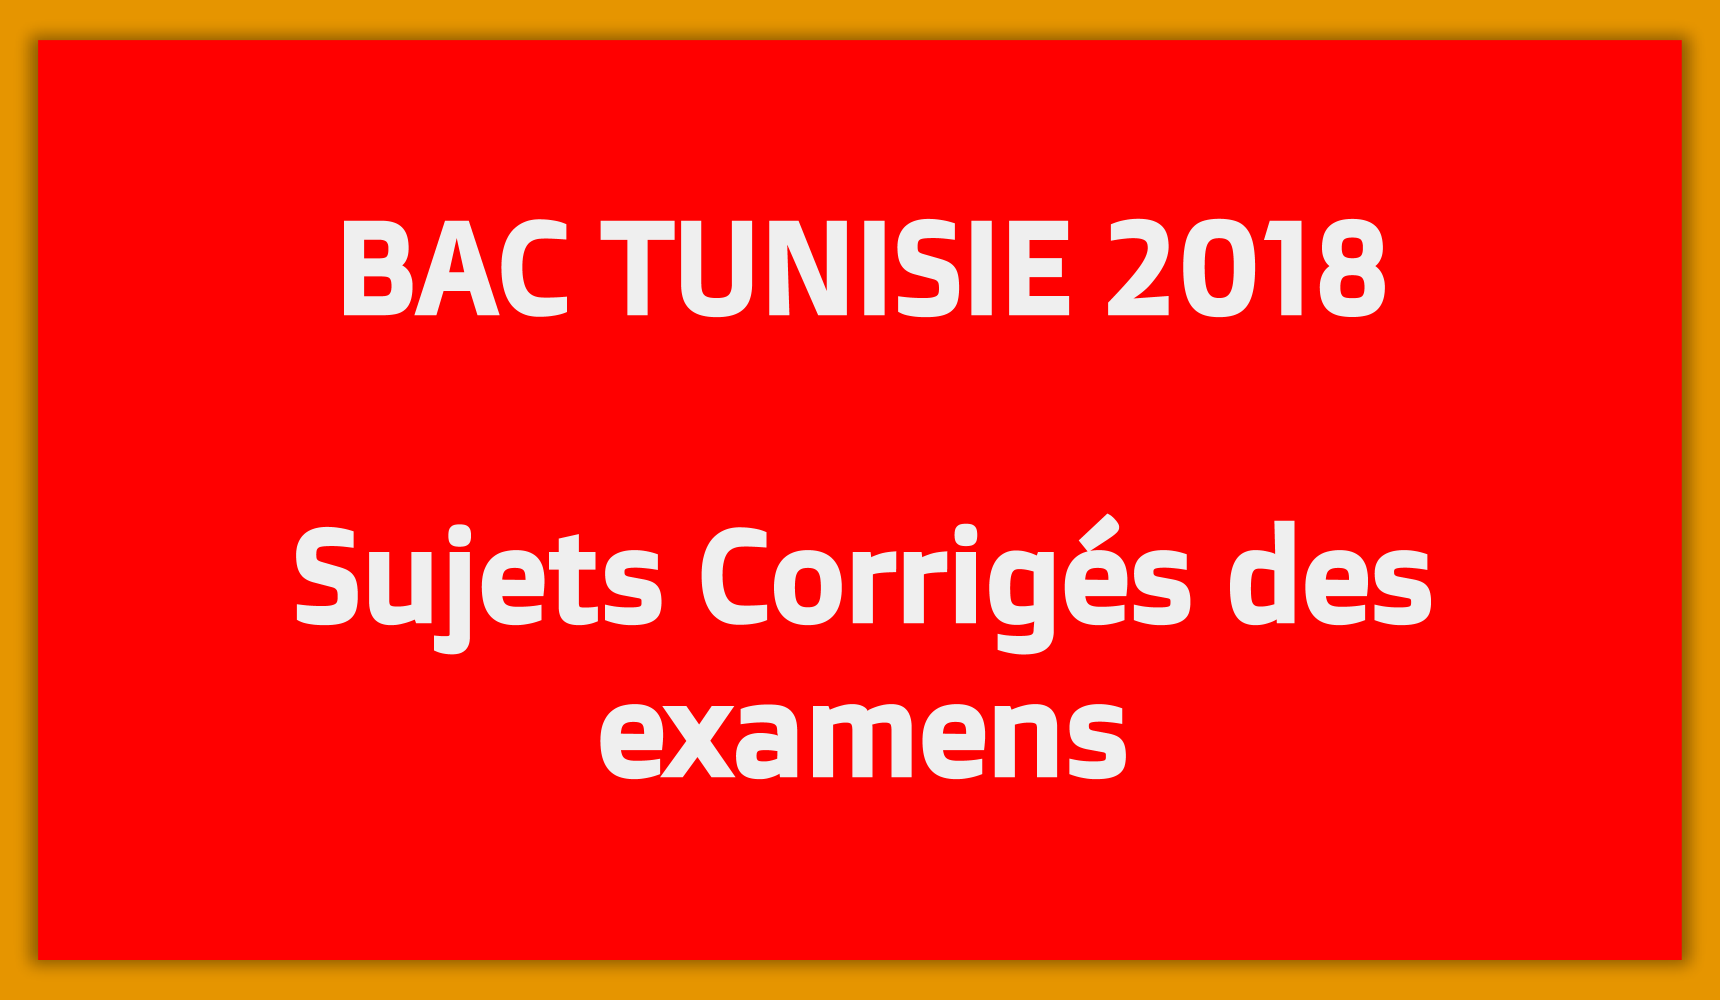 Bac Tunisie 2018 - Télécharger Sujets Corrigés des exercices du Bac Tunisie en PDF